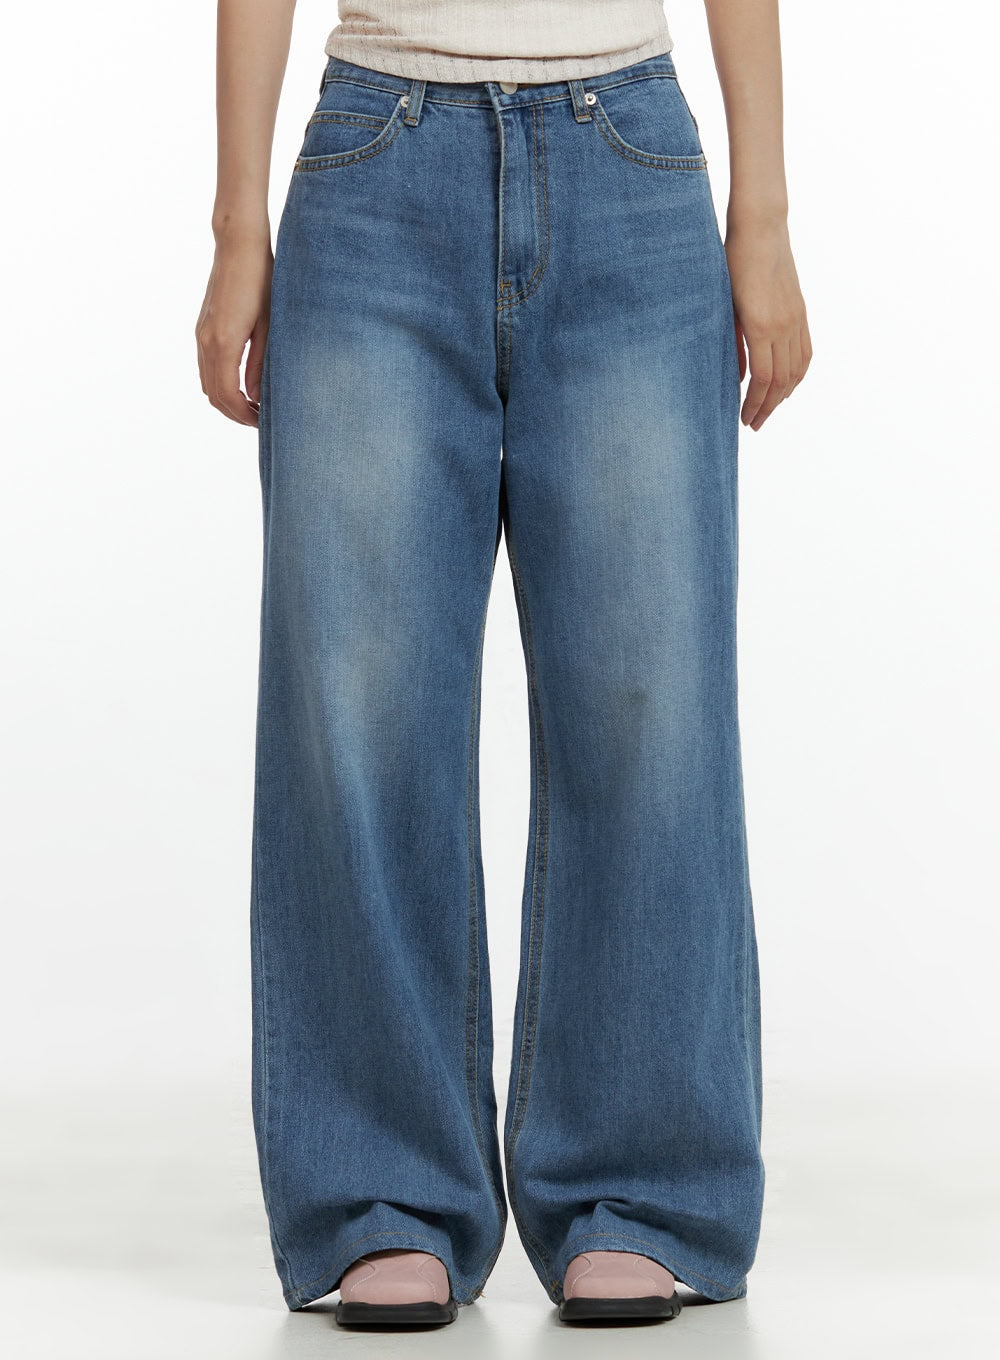 denim-baggy-fit-jeans-cu420 / Blue